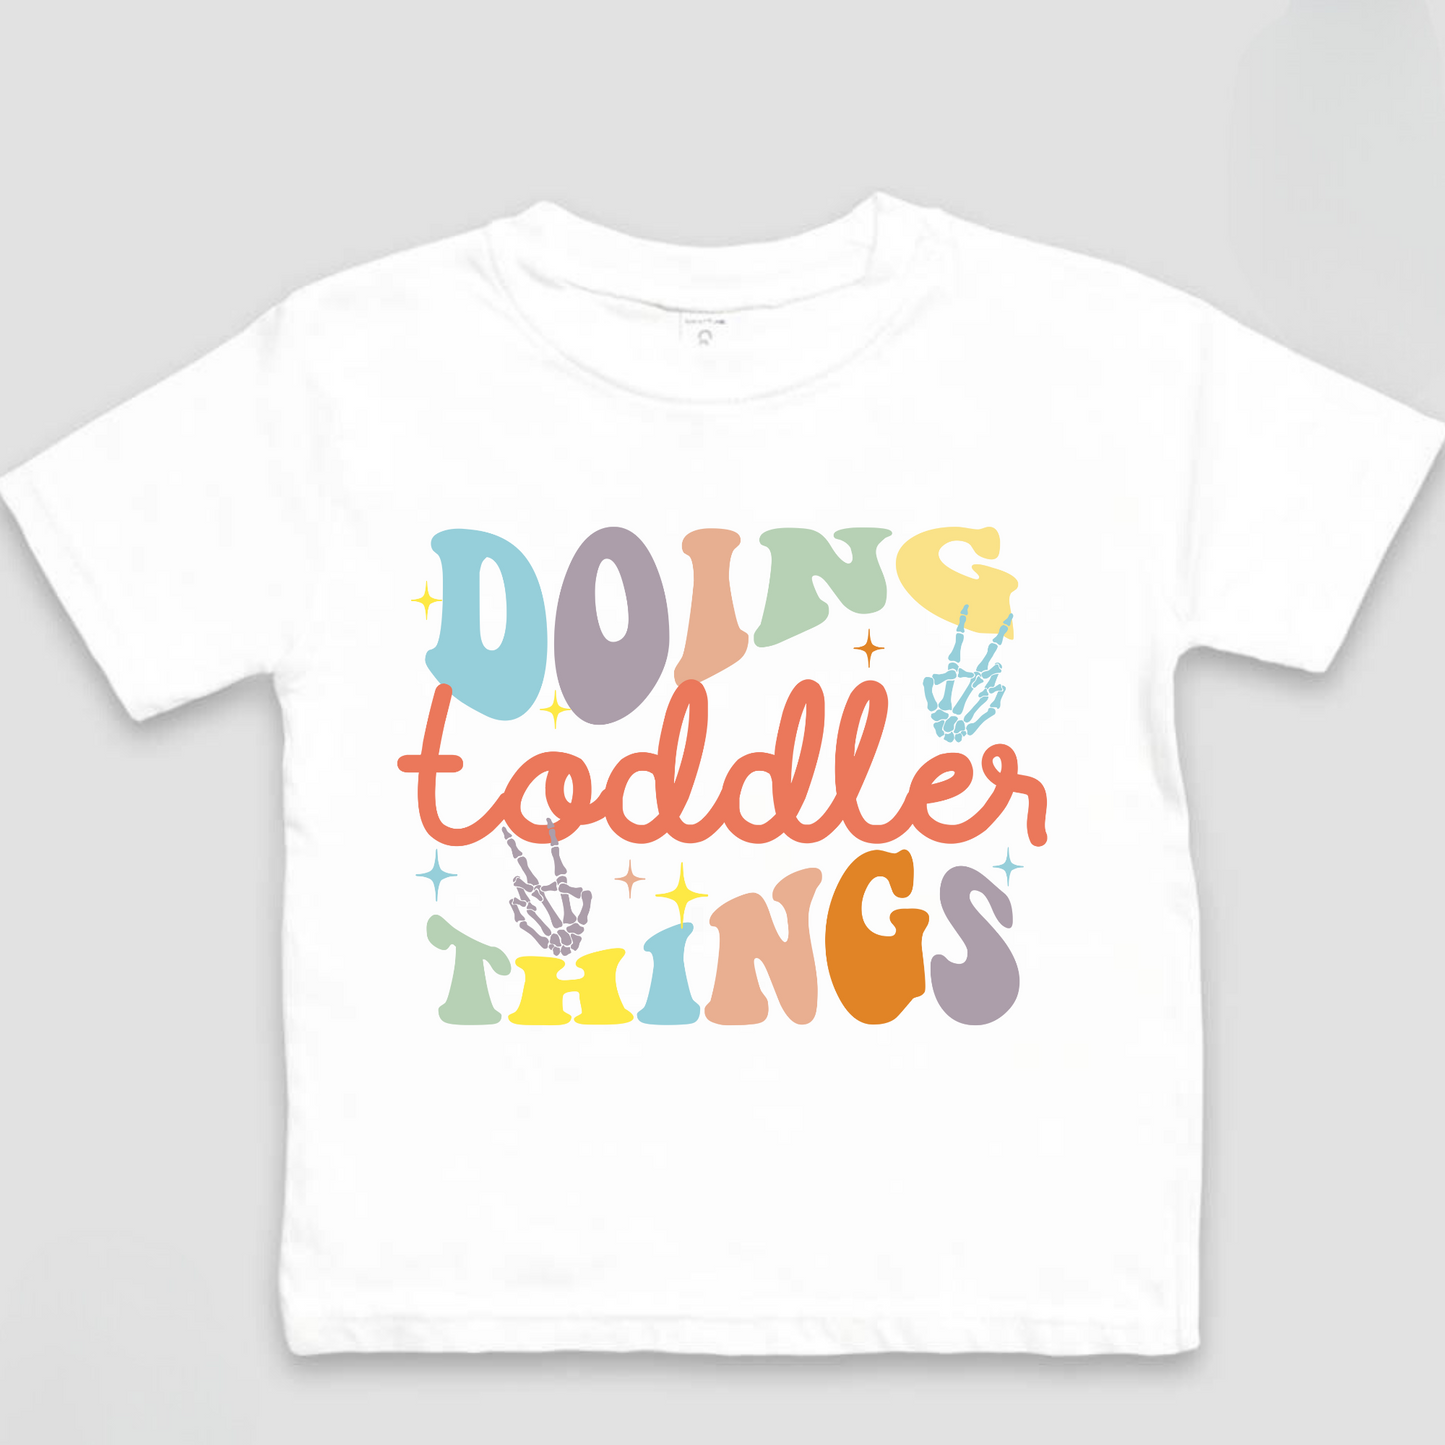 Doing Toddler Things Shirt